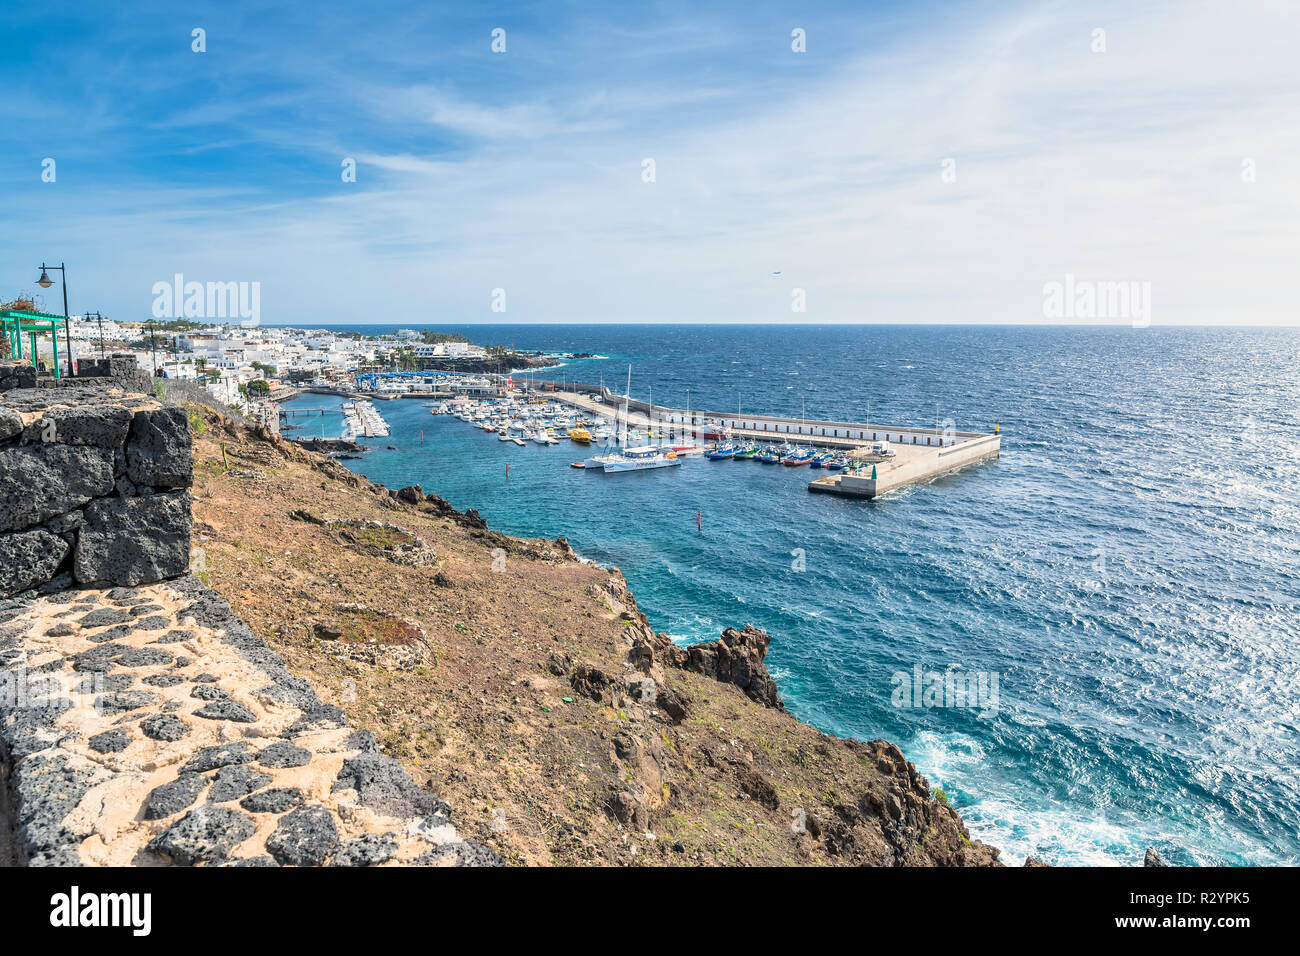 Puerto del Carmen, Spanien - 30. Dezember 2016: Tag Blick auf Altstadt und Hafen Promenade mit Touristen in Puerto del Carmen, Spanien. Puerto del Carmen ist Stockfoto